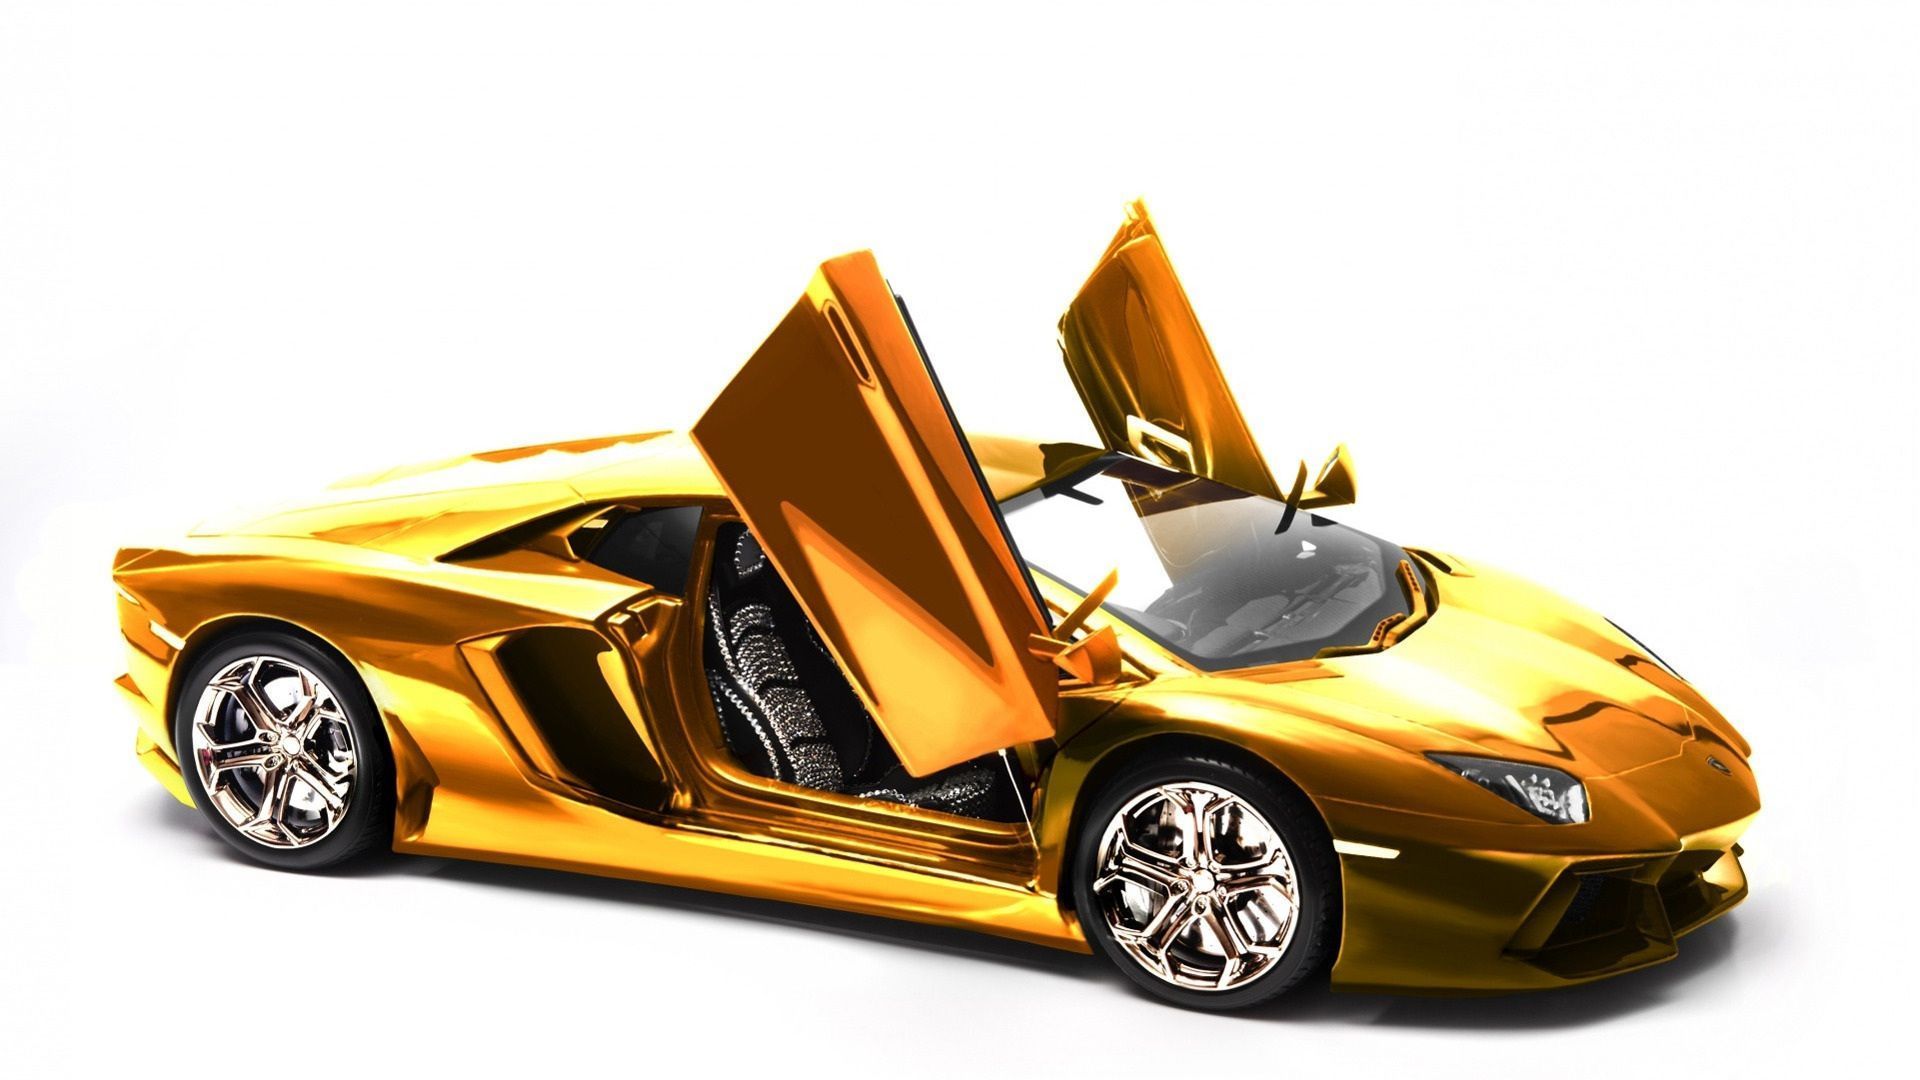 Cool Gold Cars Lamborghini Wallpapers Wallpapers